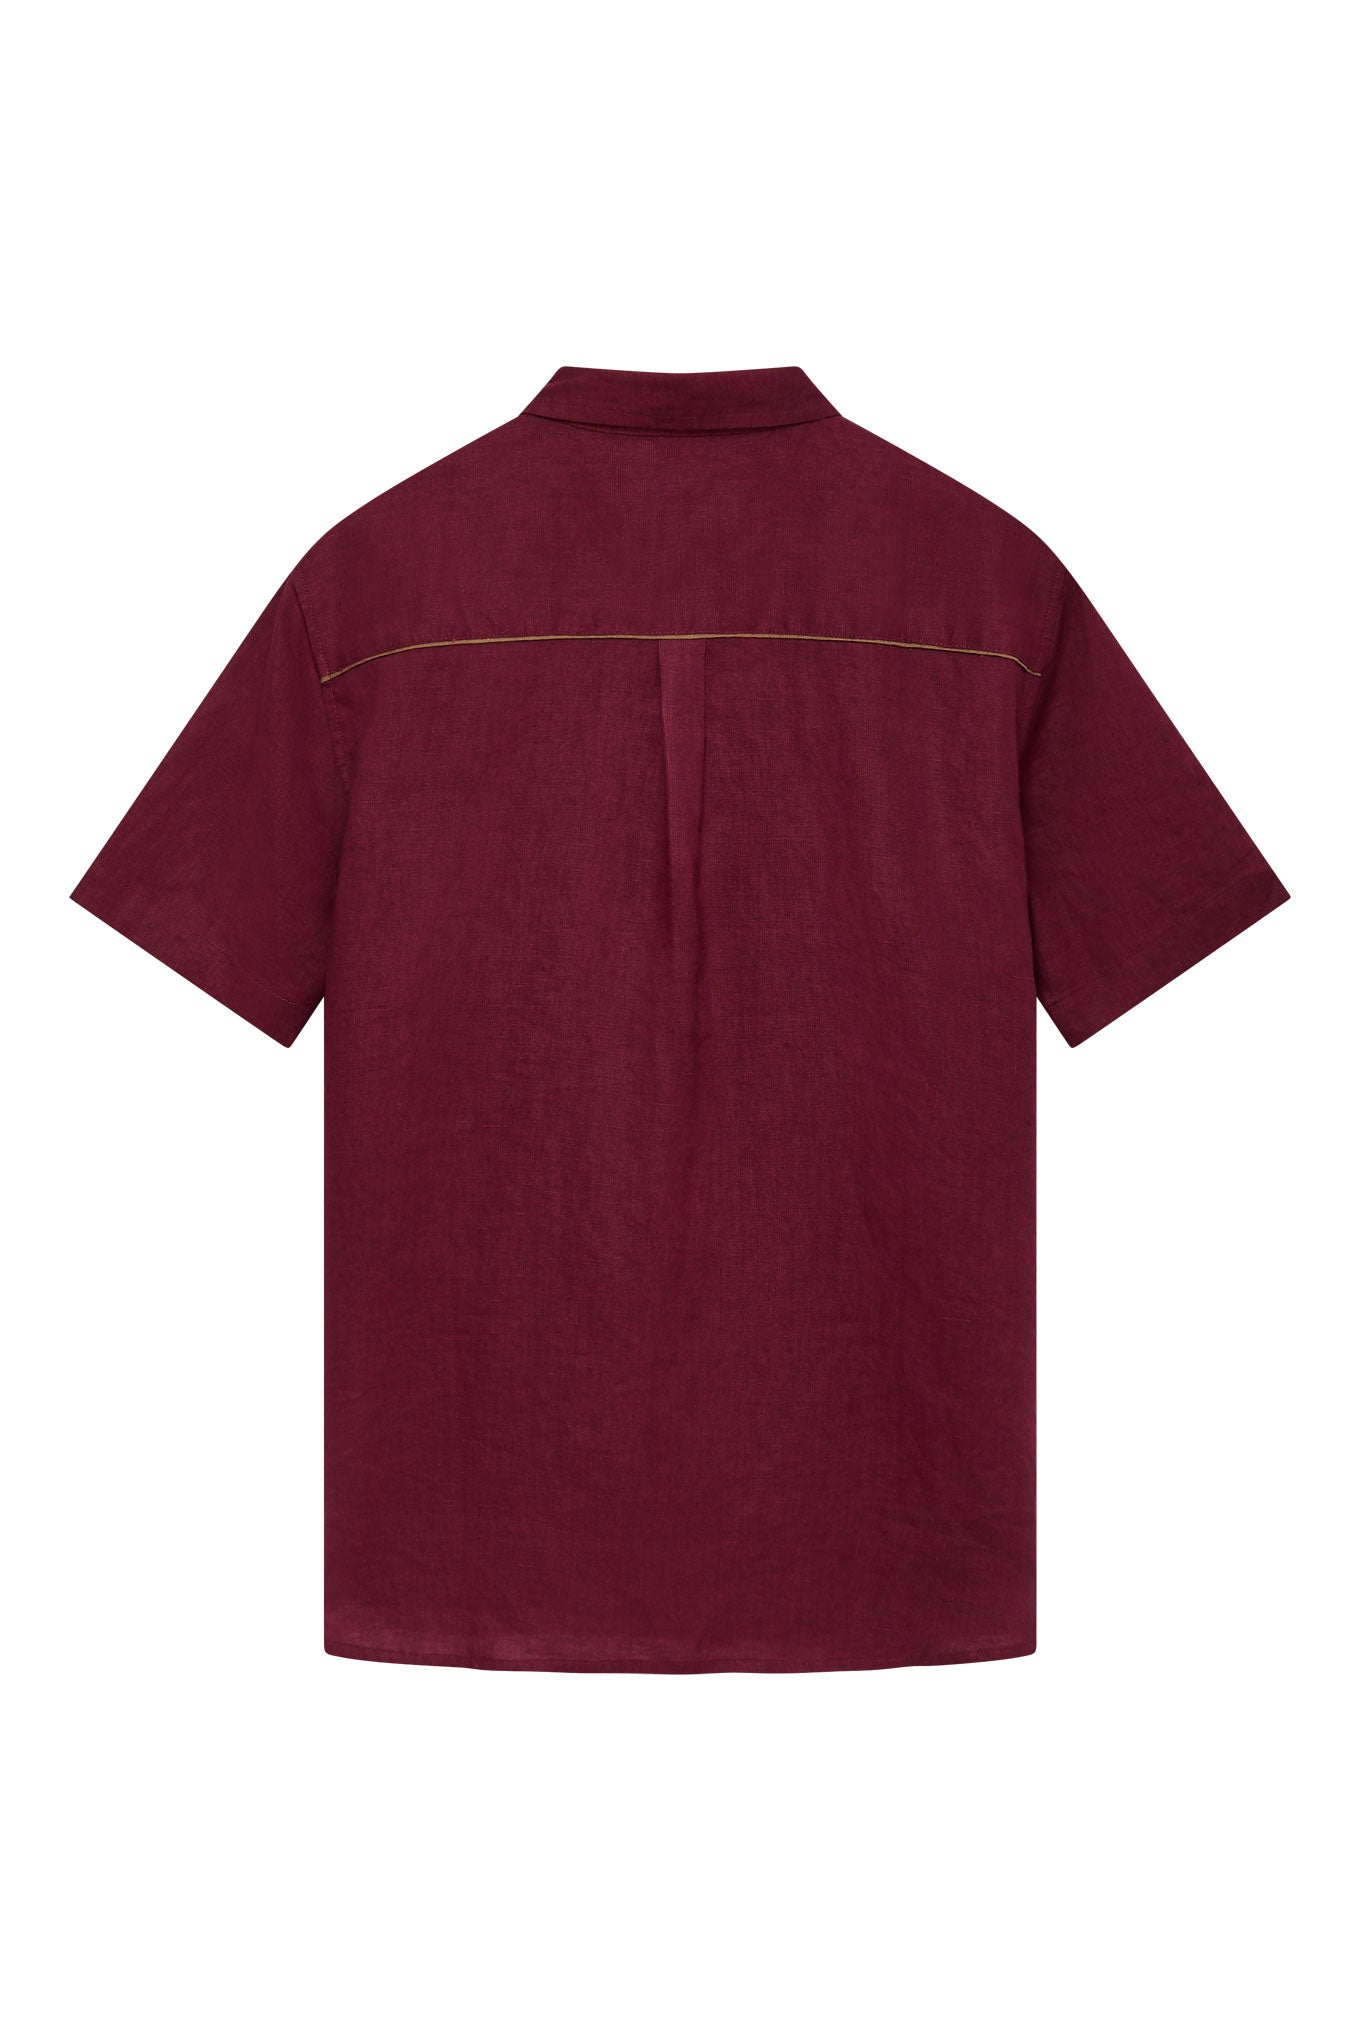 Komodo Dingwalls Linen Shirt - Berry